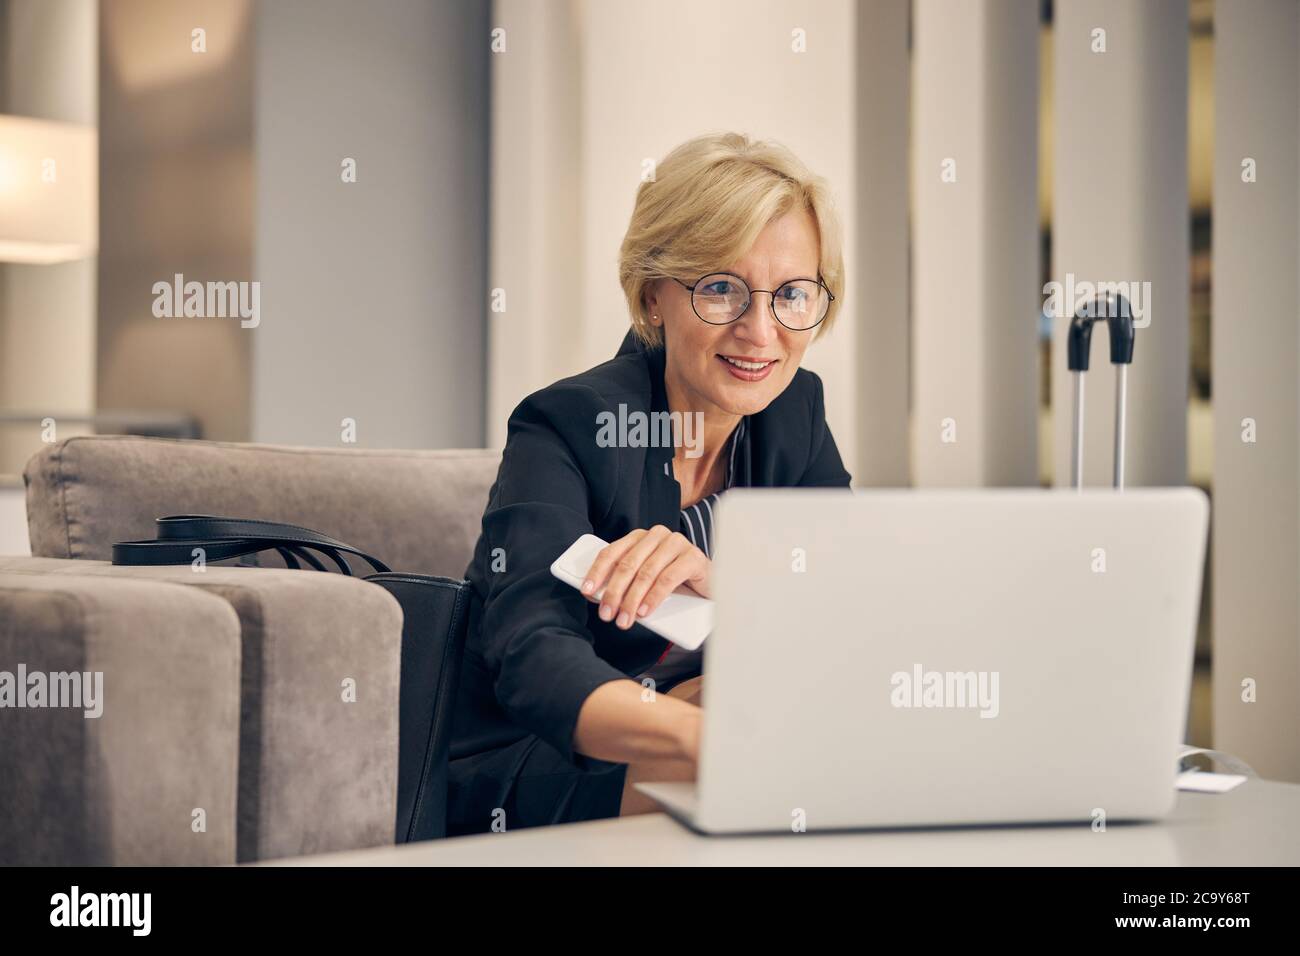 Belle femme utilisant un ordinateur portable avant un voyage d'affaires Banque D'Images